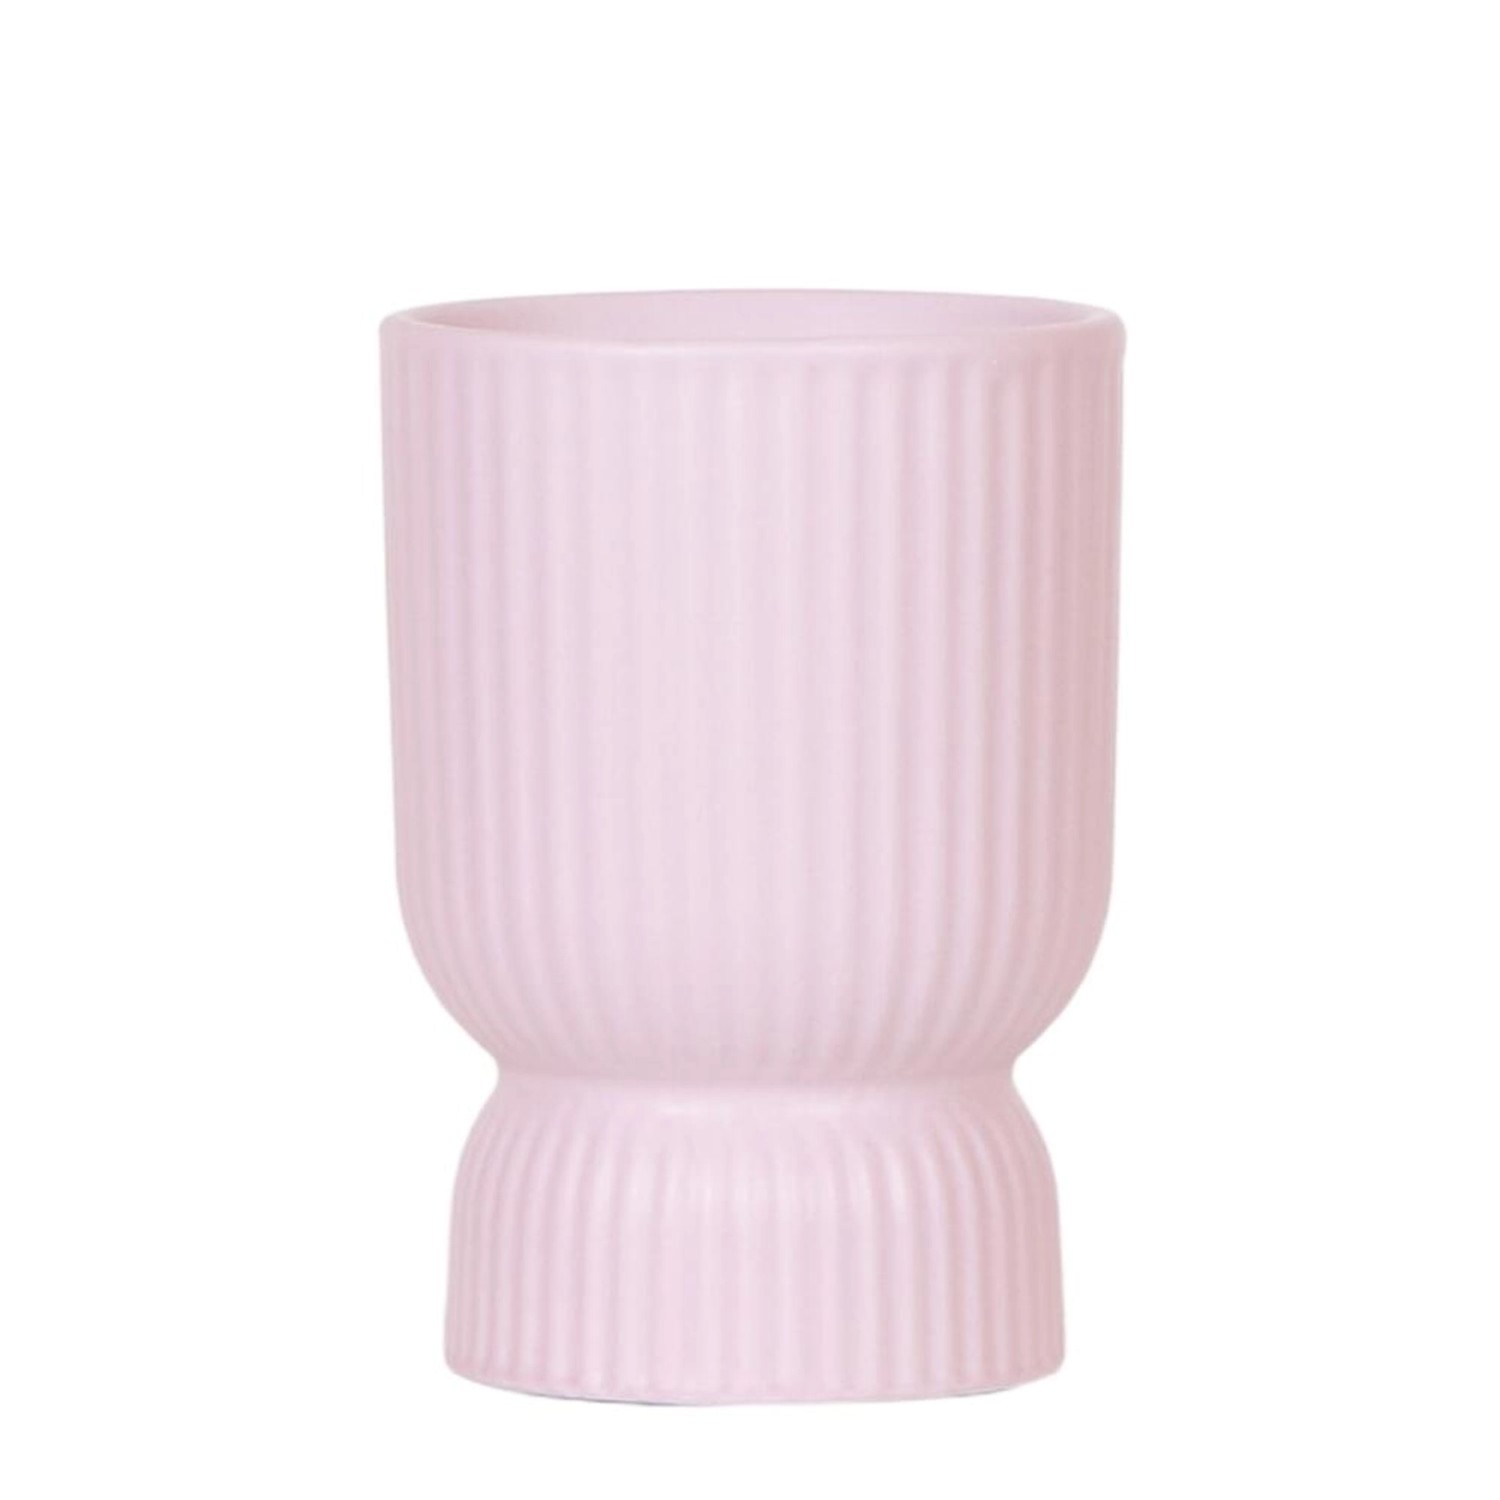 Exotenherz Übertopf Diabolo klassische Form Zarte Pastellfarben Rosa Passen günstig online kaufen